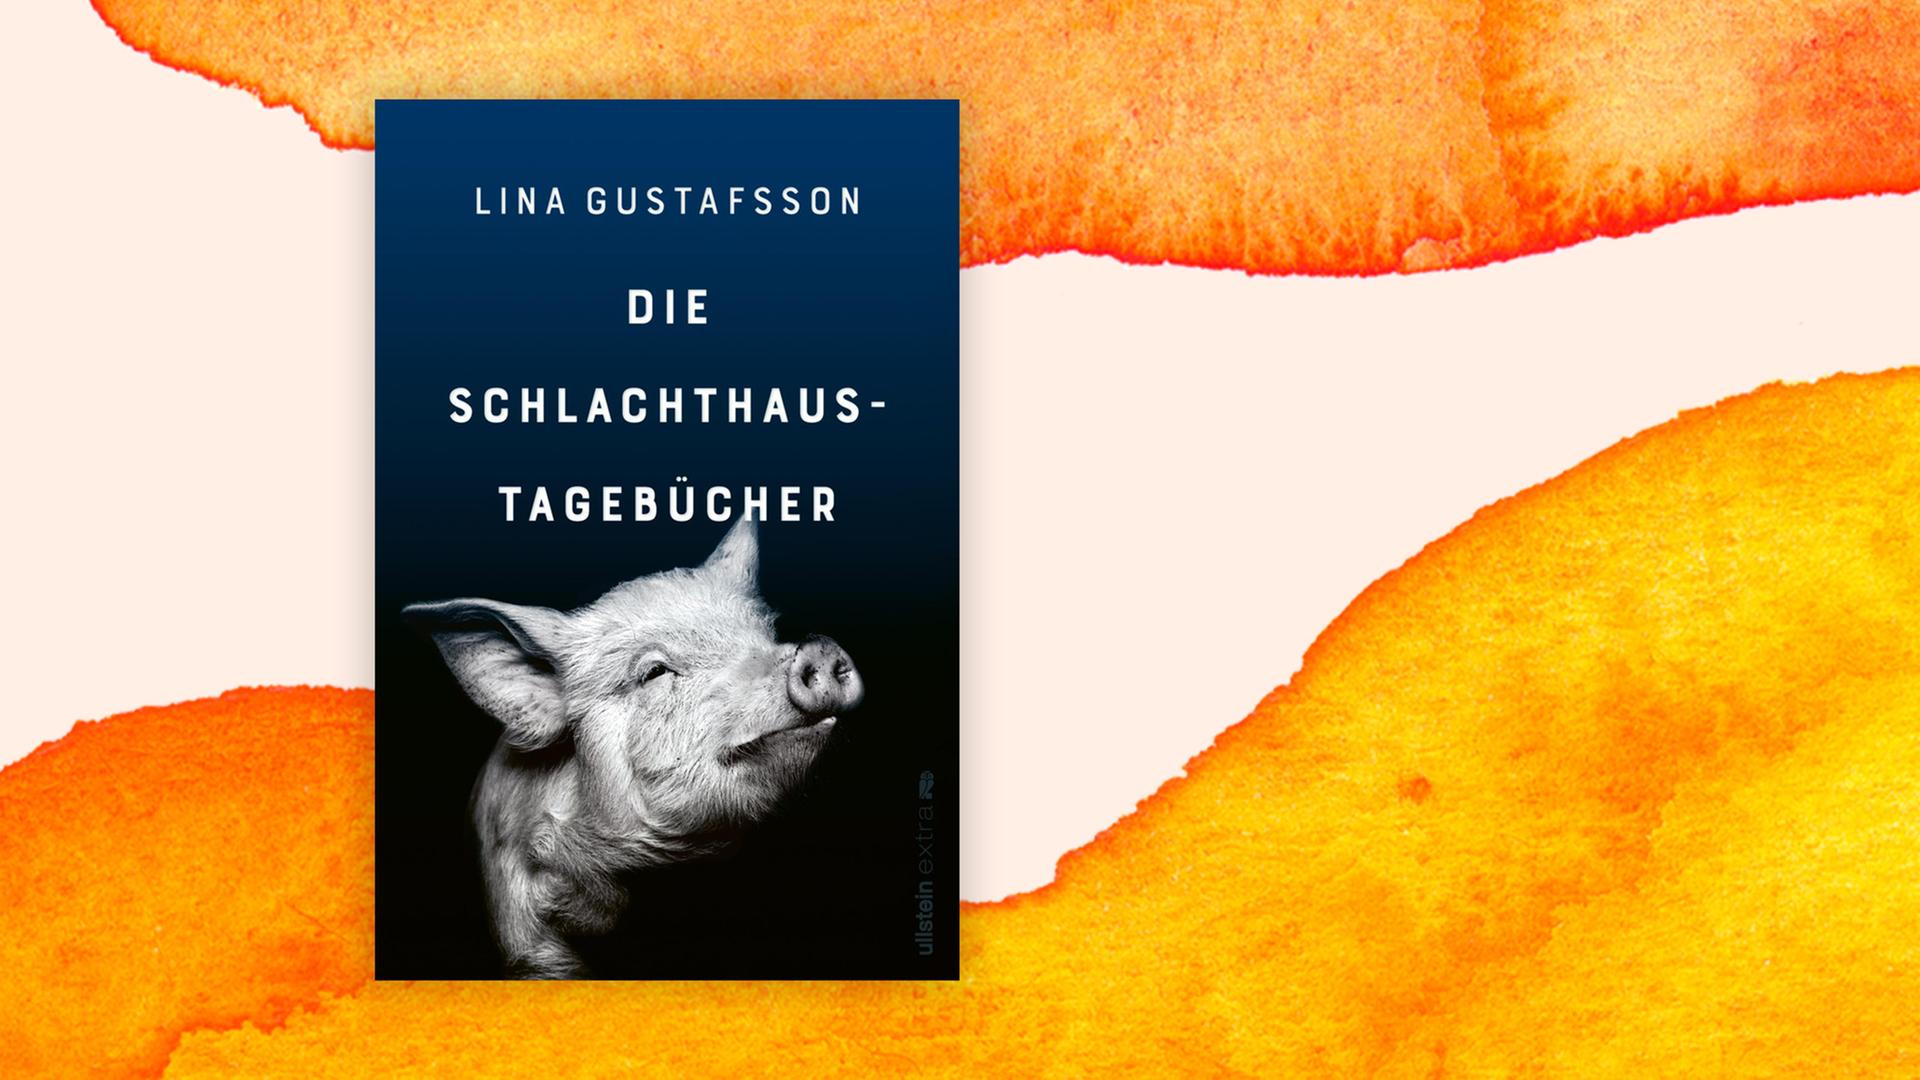 Buchcover: "Die Schlachthaus-Tagebücher" von Lina Gustafsson